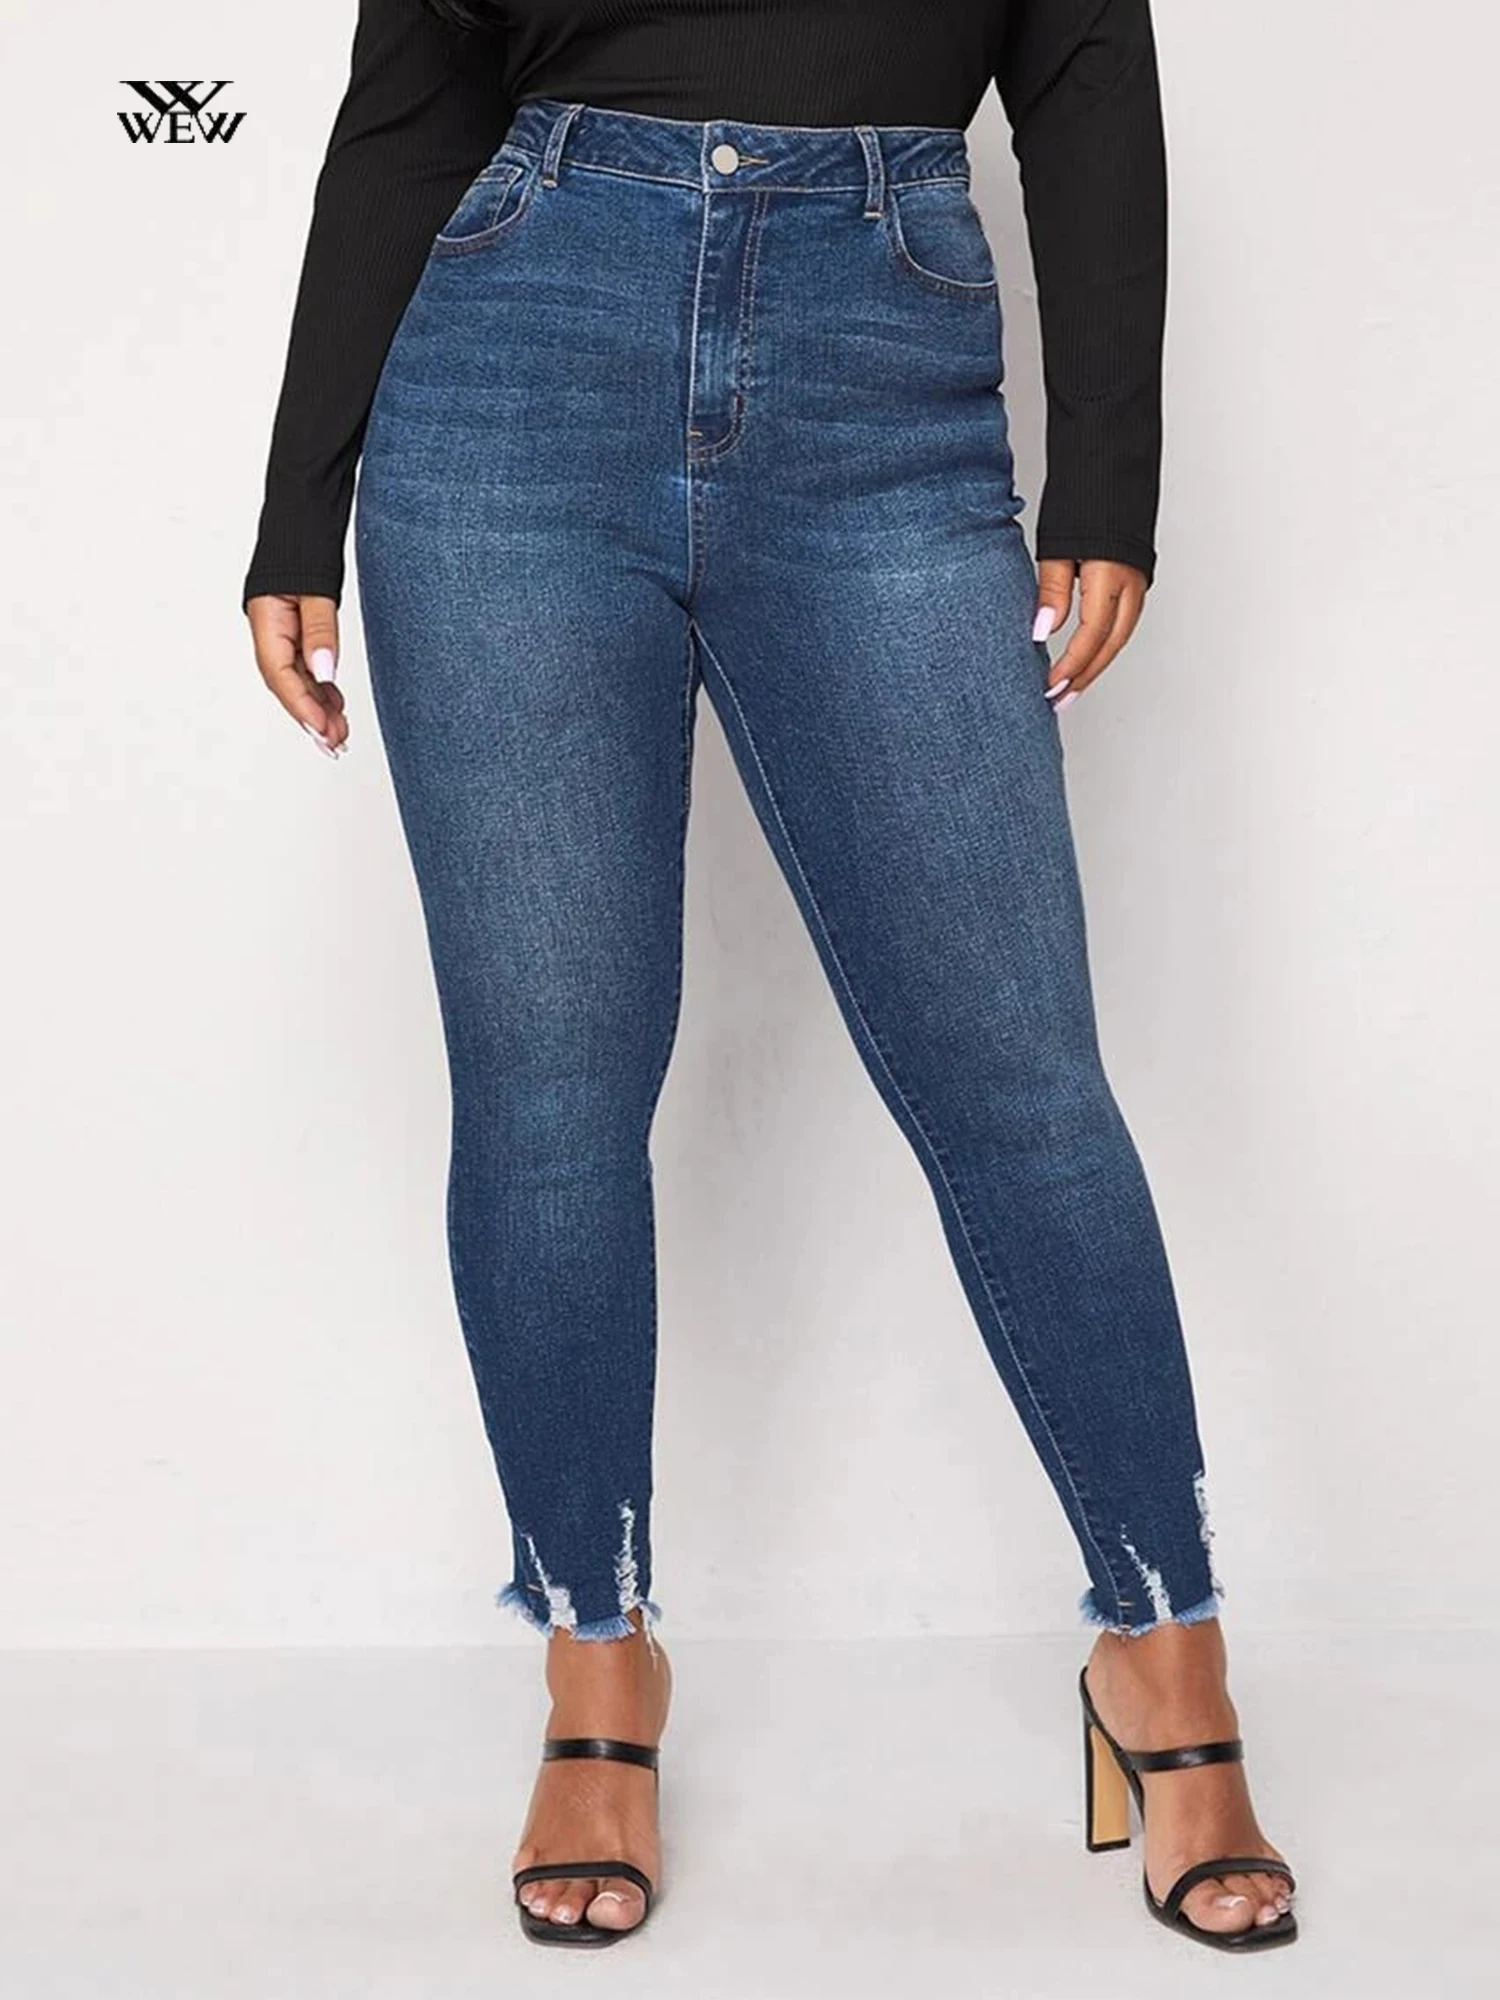 Jeans Skinny taglie forti per donna elastico a vita alta matita Jeans donna Legging Jeans mamma 100kgs pantaloni in Denim Curvy per l'autunno